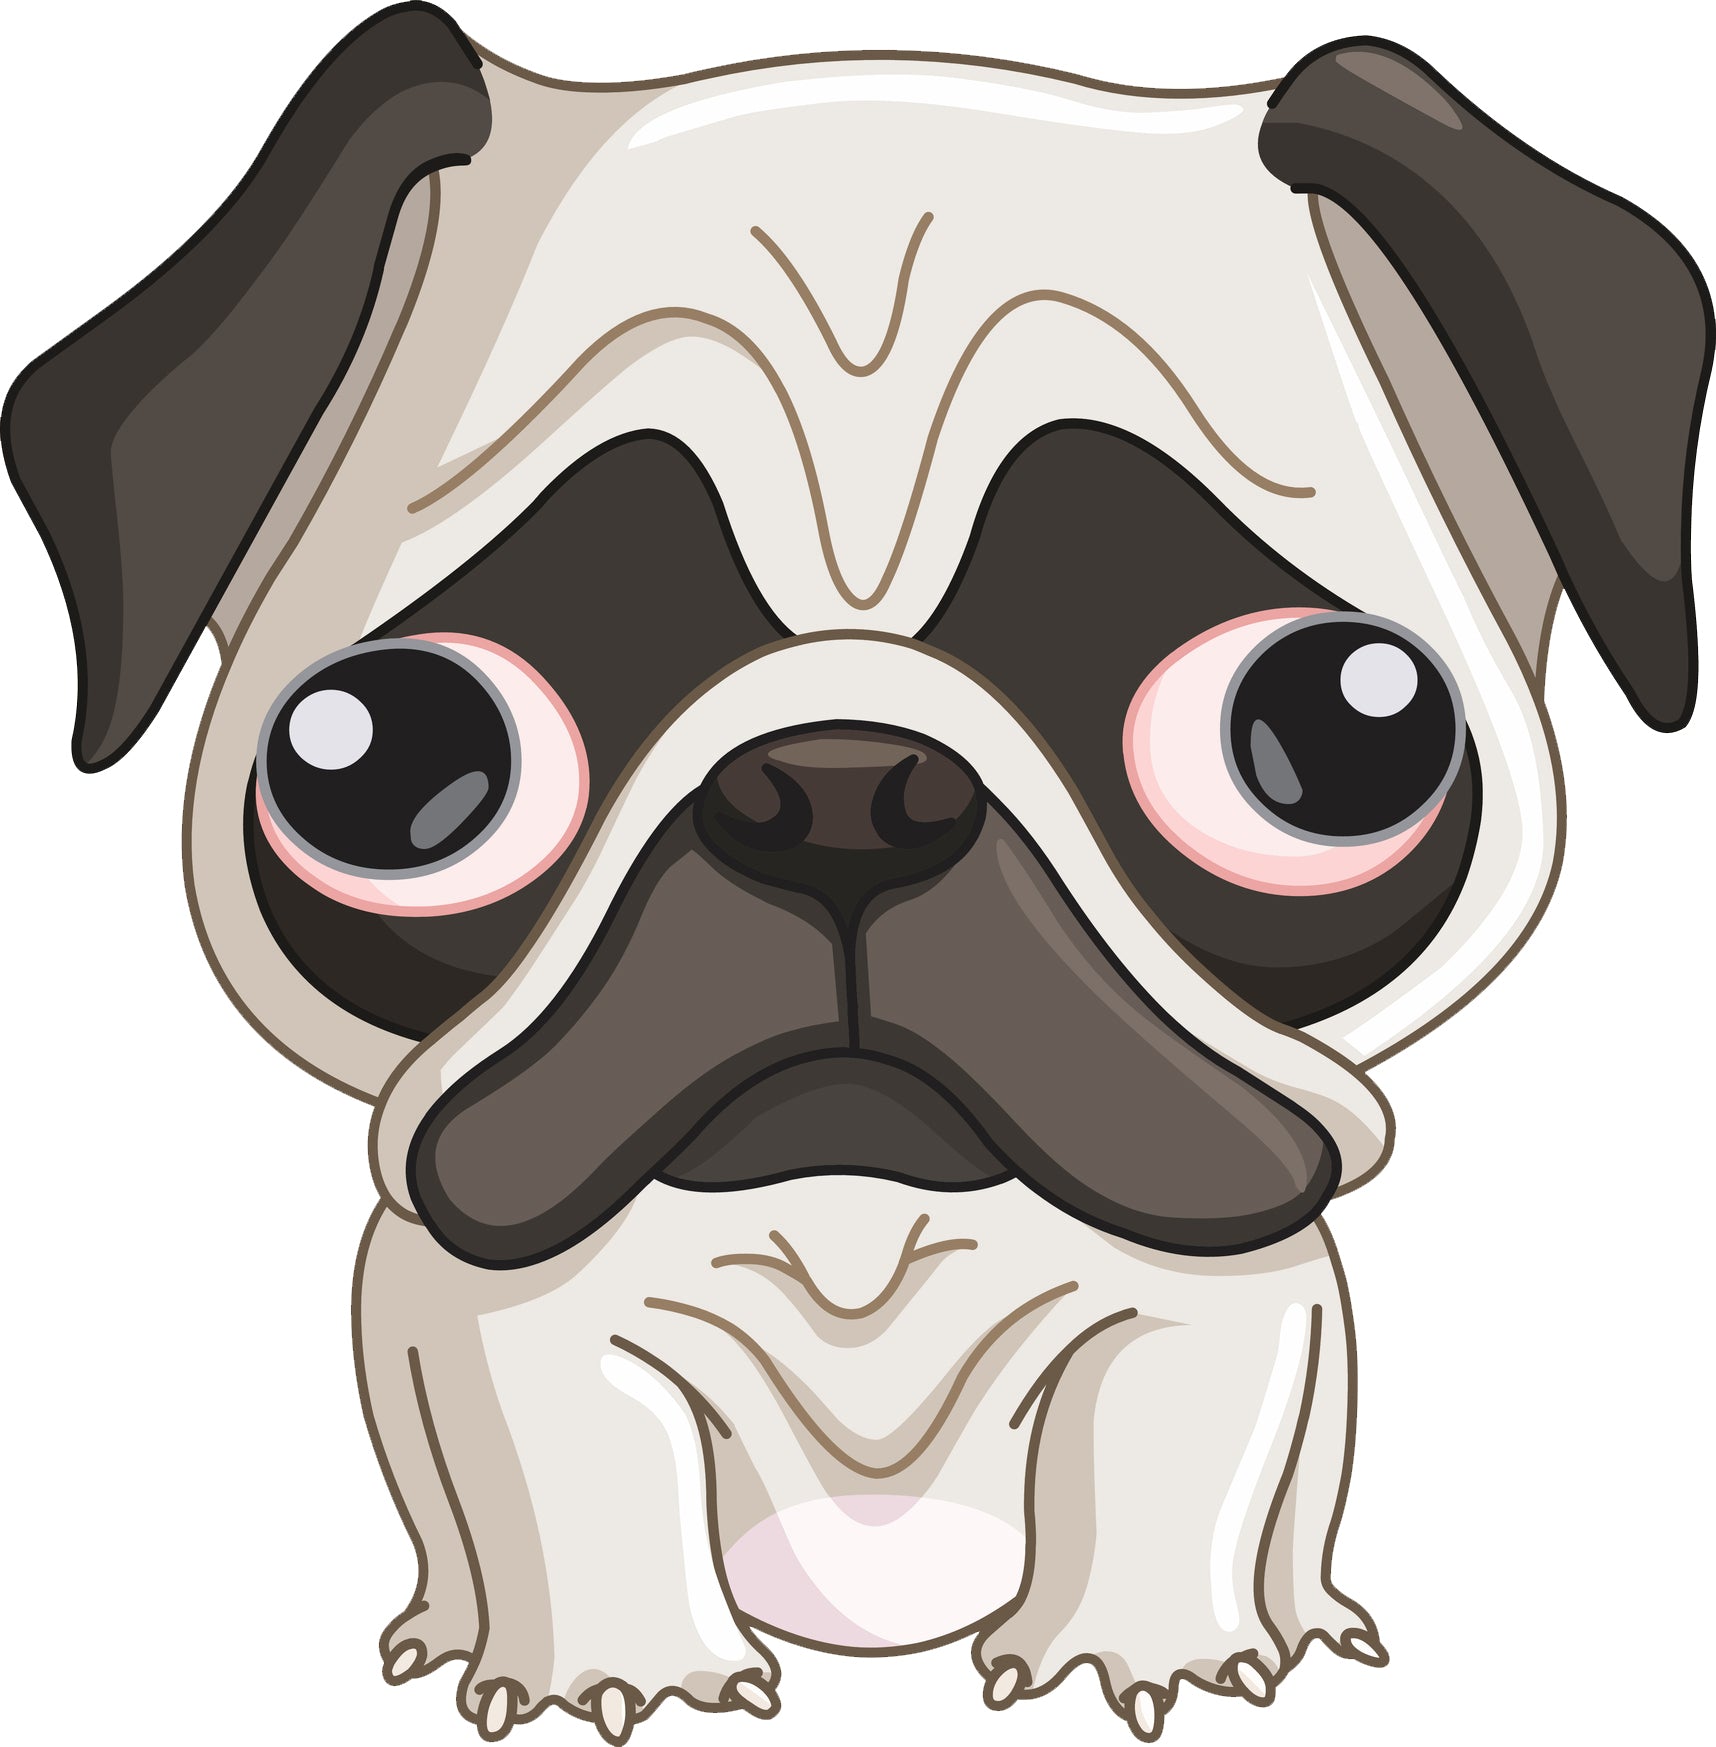 Sad Little Pug Puppy Dog Cartoon Emoji Vinyl Decal Sticker